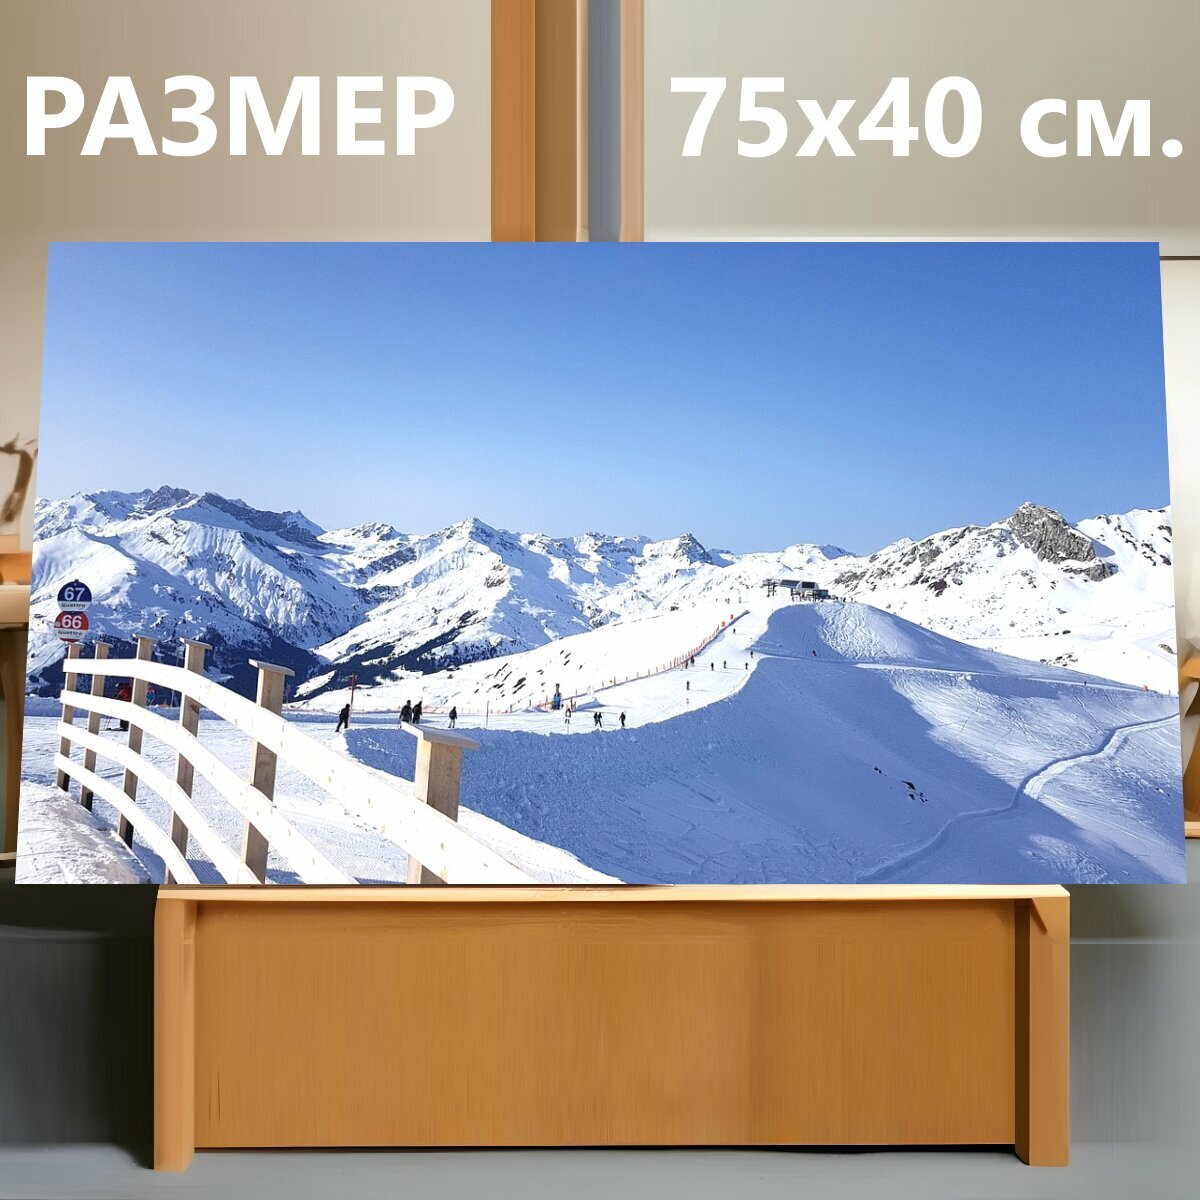 Картина на холсте "Кататься на лыжах, зима, горные лыжи" на подрамнике 75х40 см. для интерьера